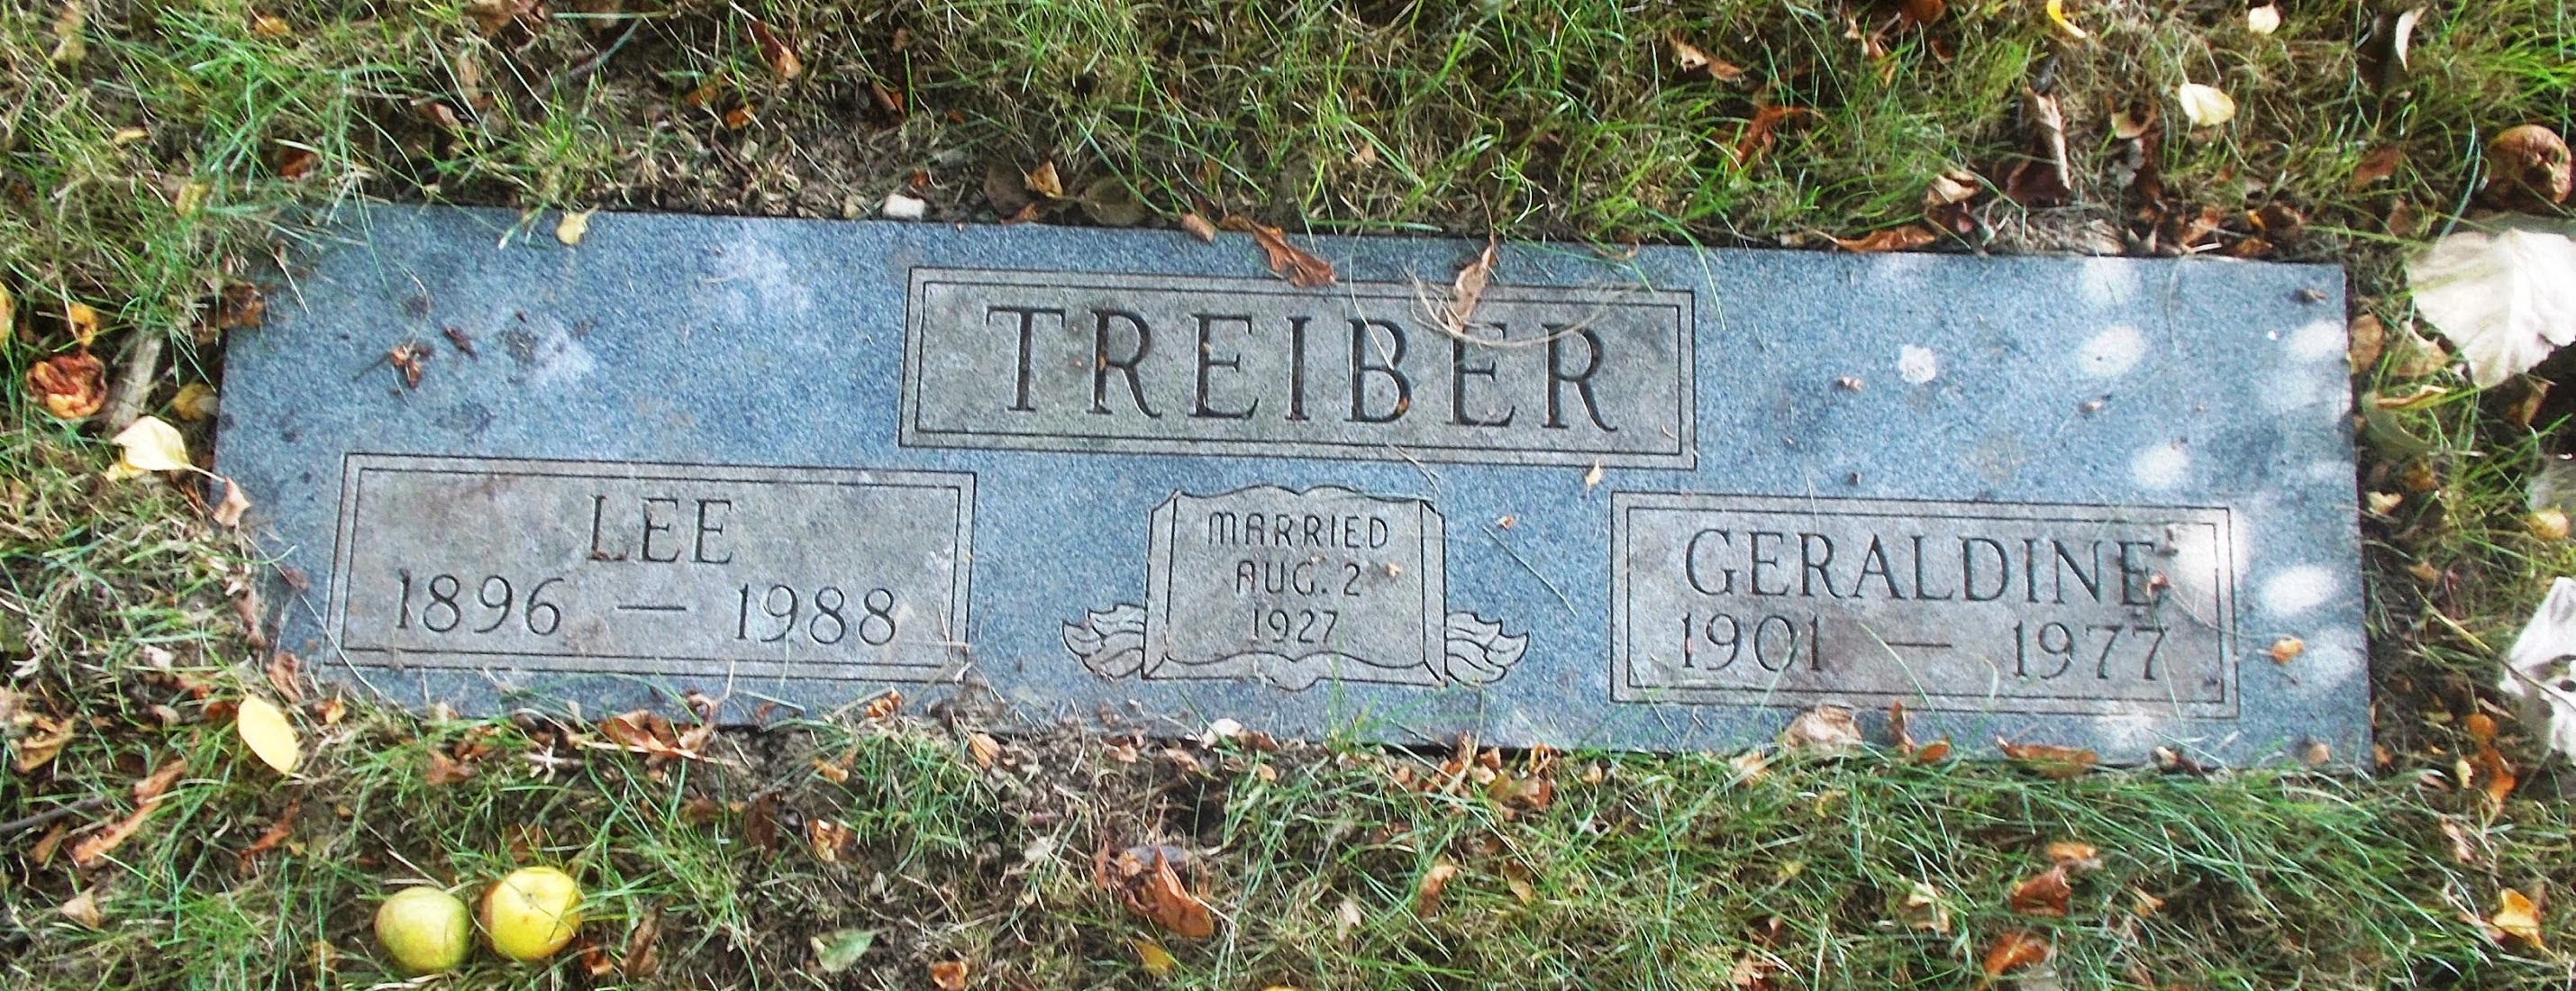 Lee Treiber